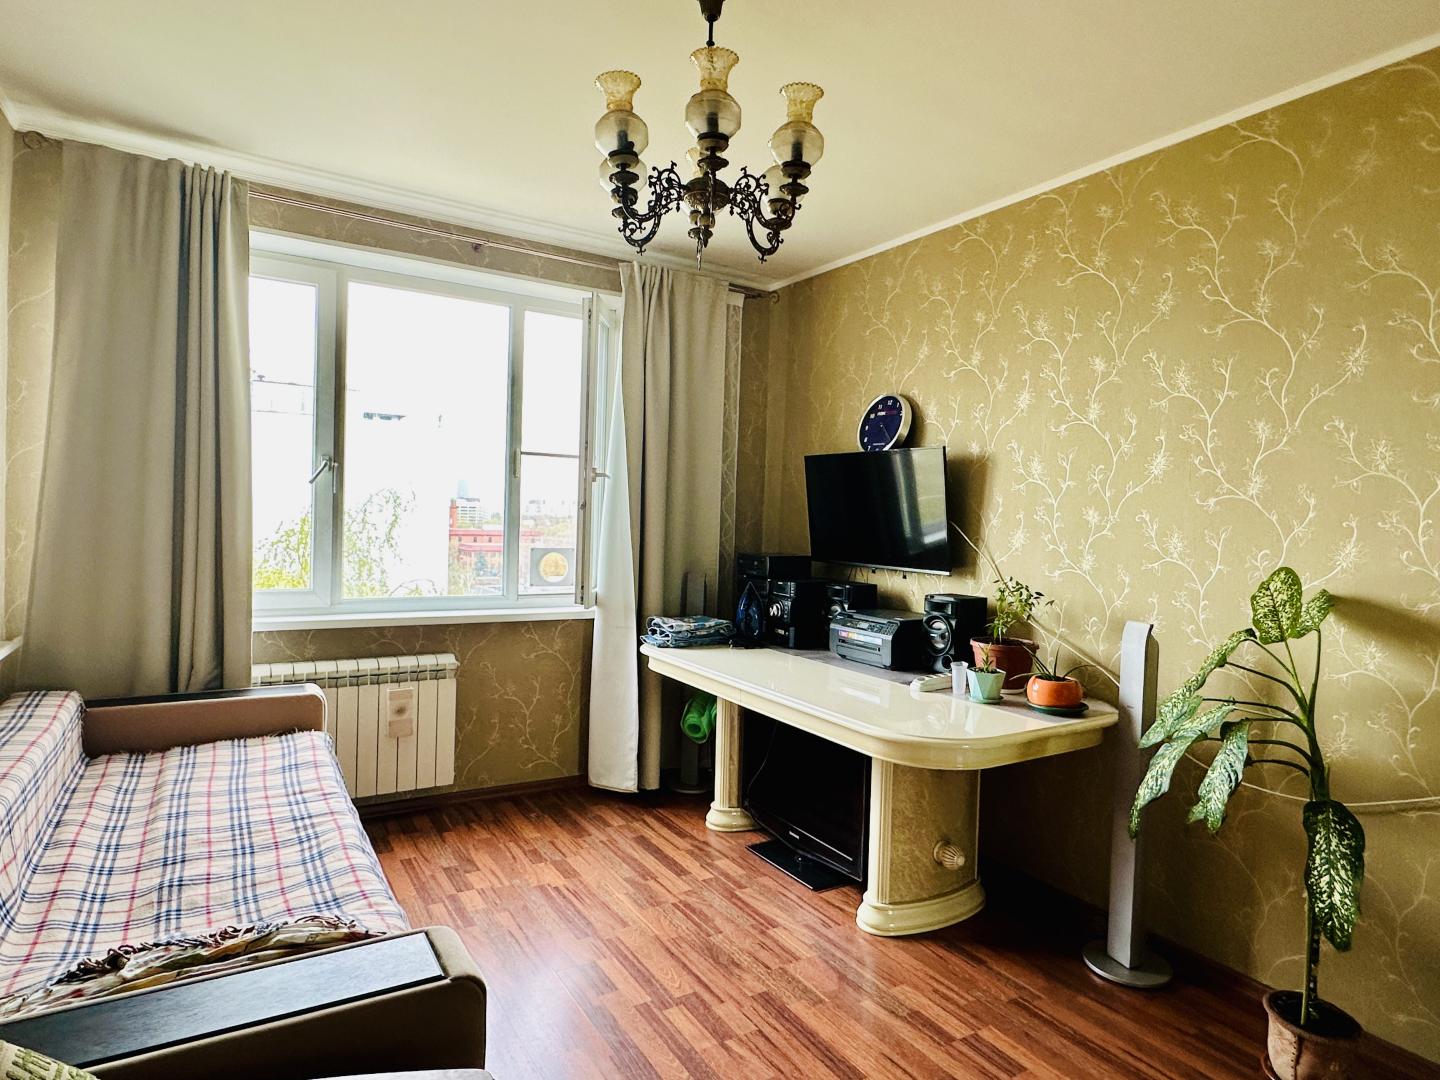 Продам квартиру в Москве по адресу Алтуфьевское шоссе, 18, площадь 628 квм Недвижимость Москва (Россия)  Помощь в одобрении ипотеки